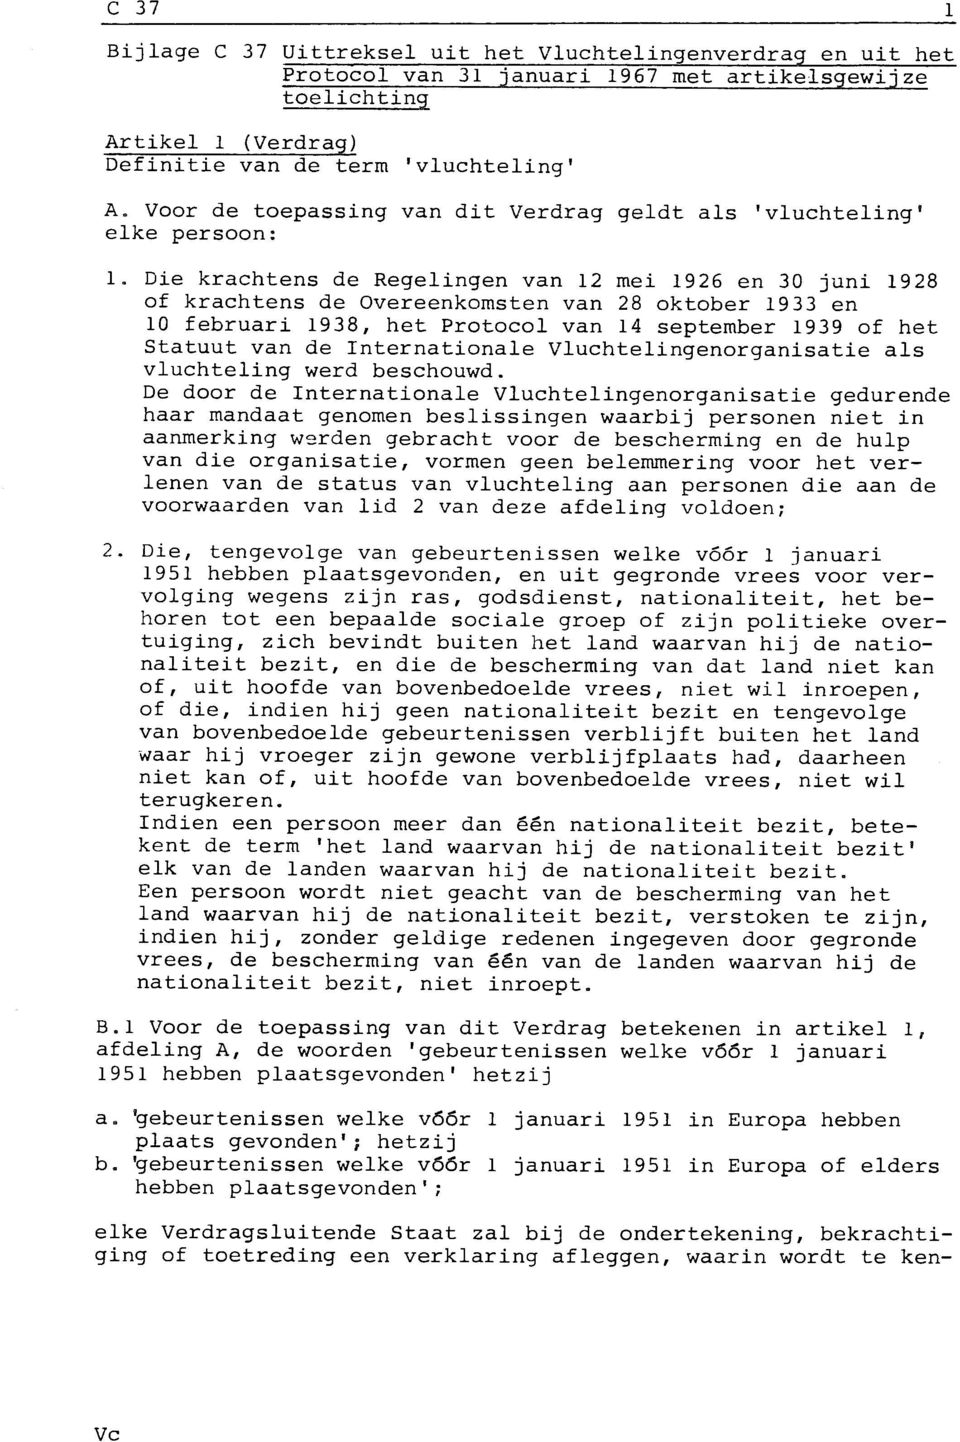 Die krachtens de Regelingen van 12 mei 1926 en 30 juni 1928 of krachtens de Overeenkomsten van 28 oktober 1933 en 10 februari 1938, het Protocol van 14 september 1939 of het Statuut van de